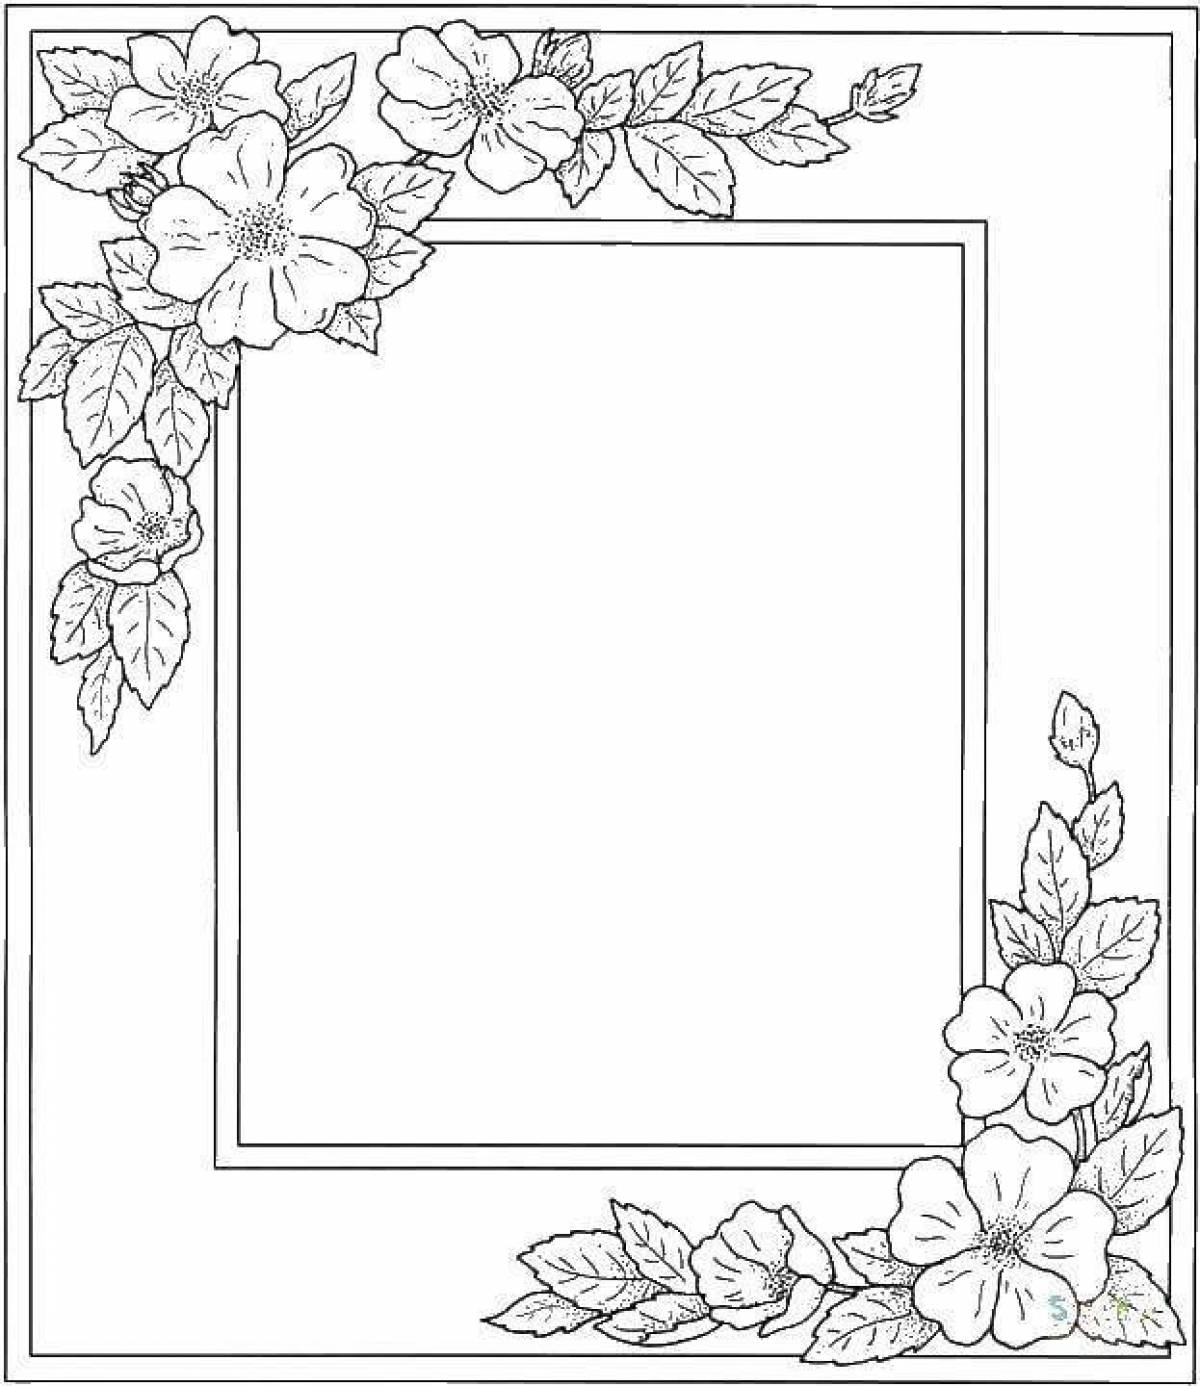 Serene coloring page черно-белое фото